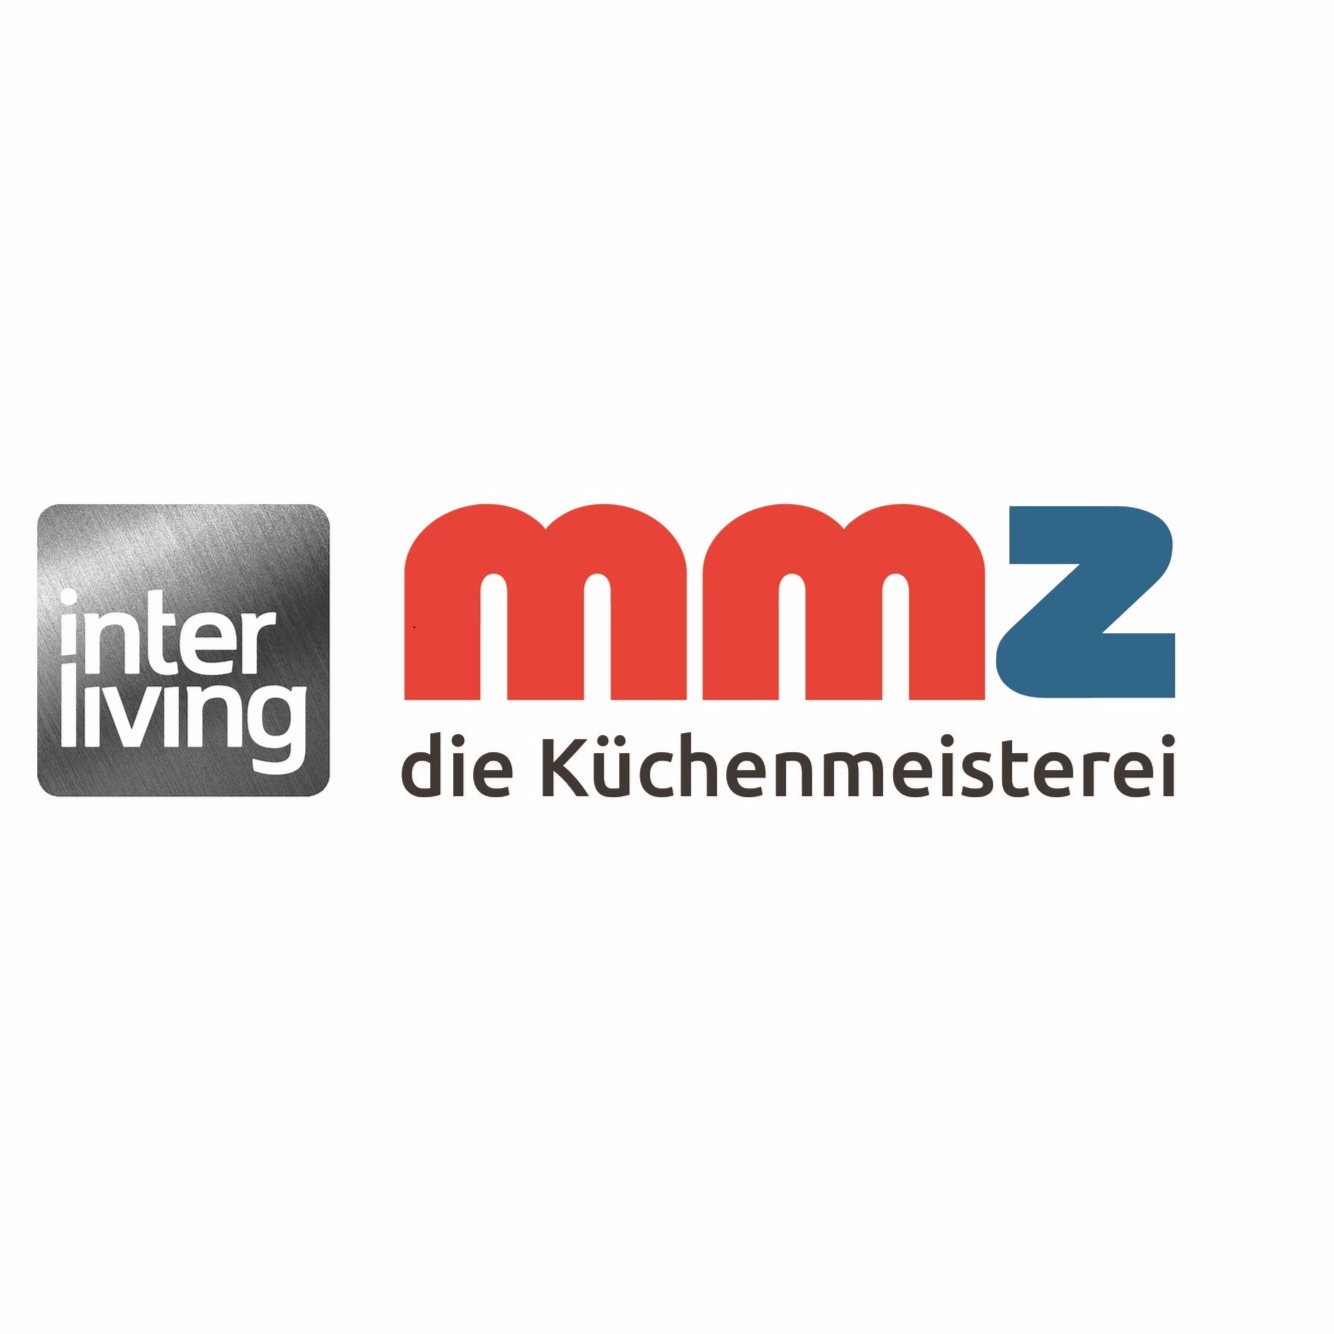 Interliving MMZ - die Küchenmeisterei in Greifswald - Logo